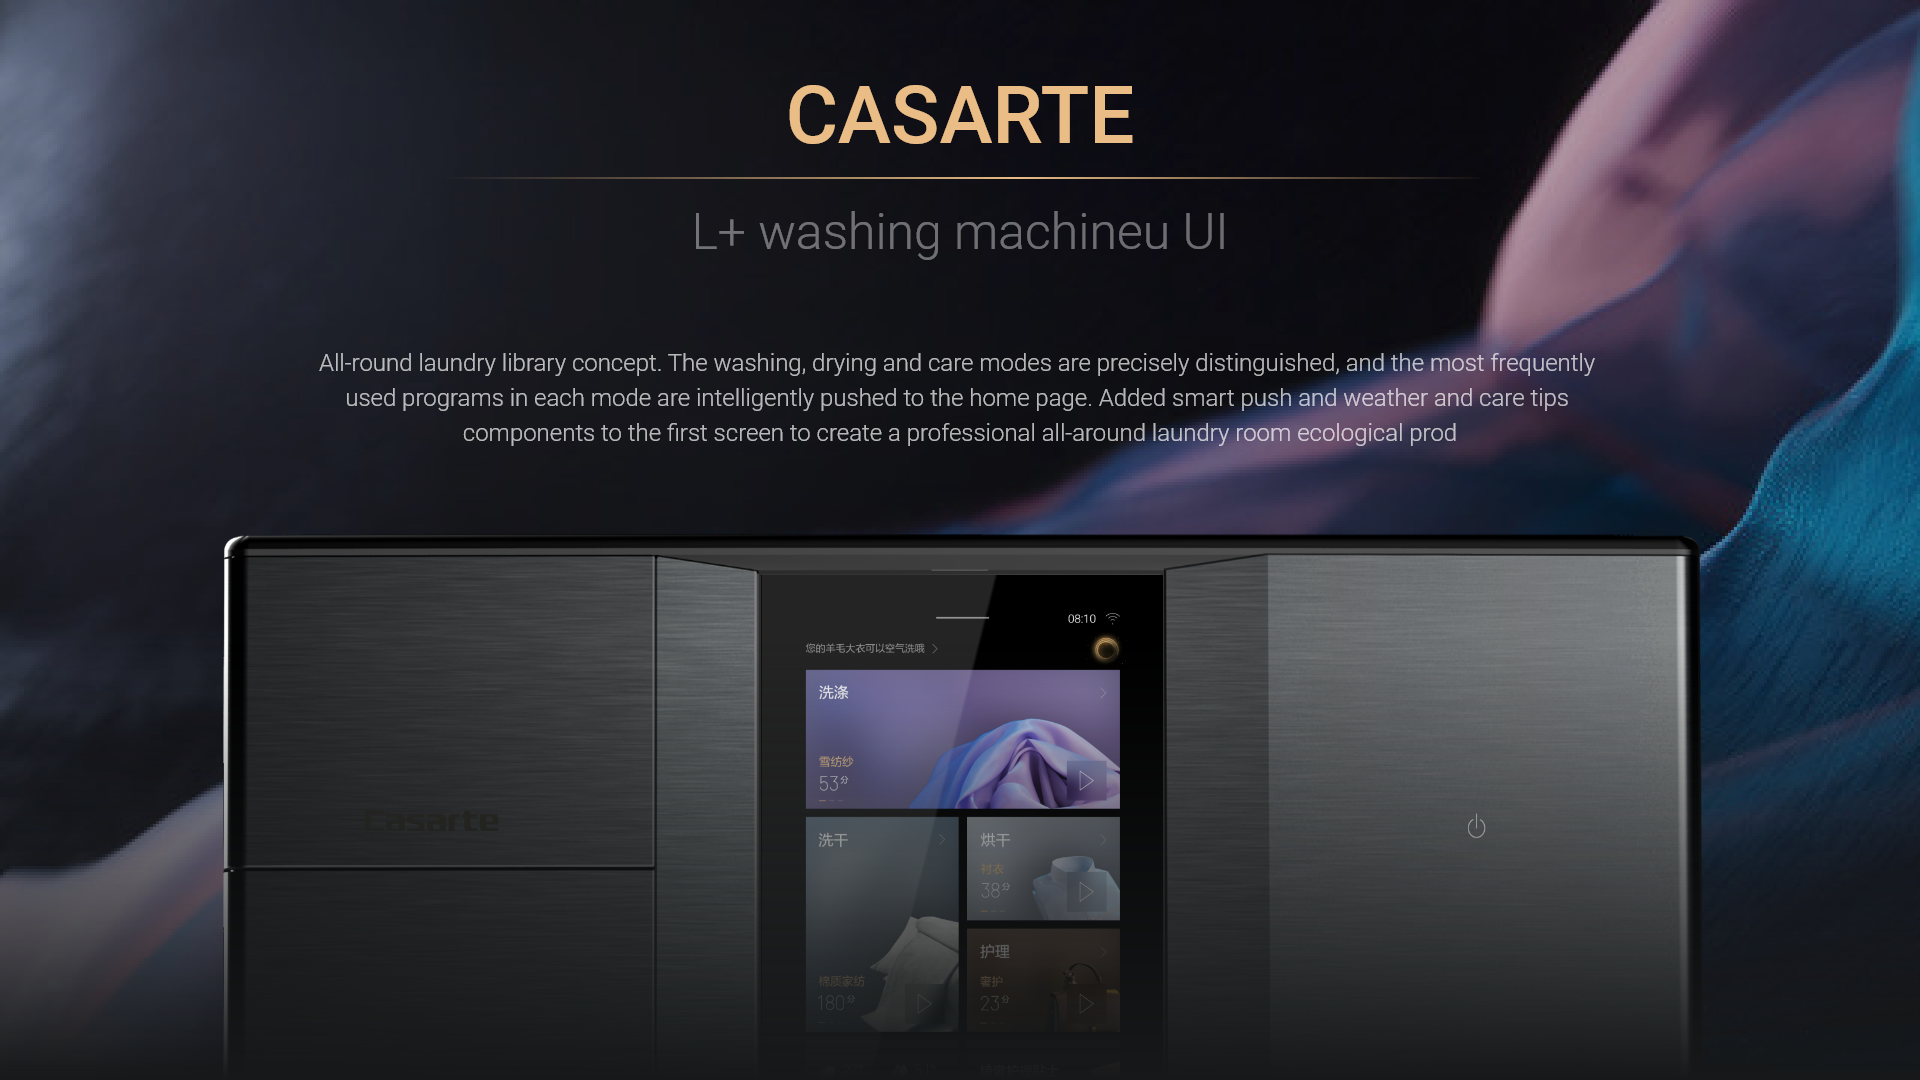 Casarte L+ washing machine